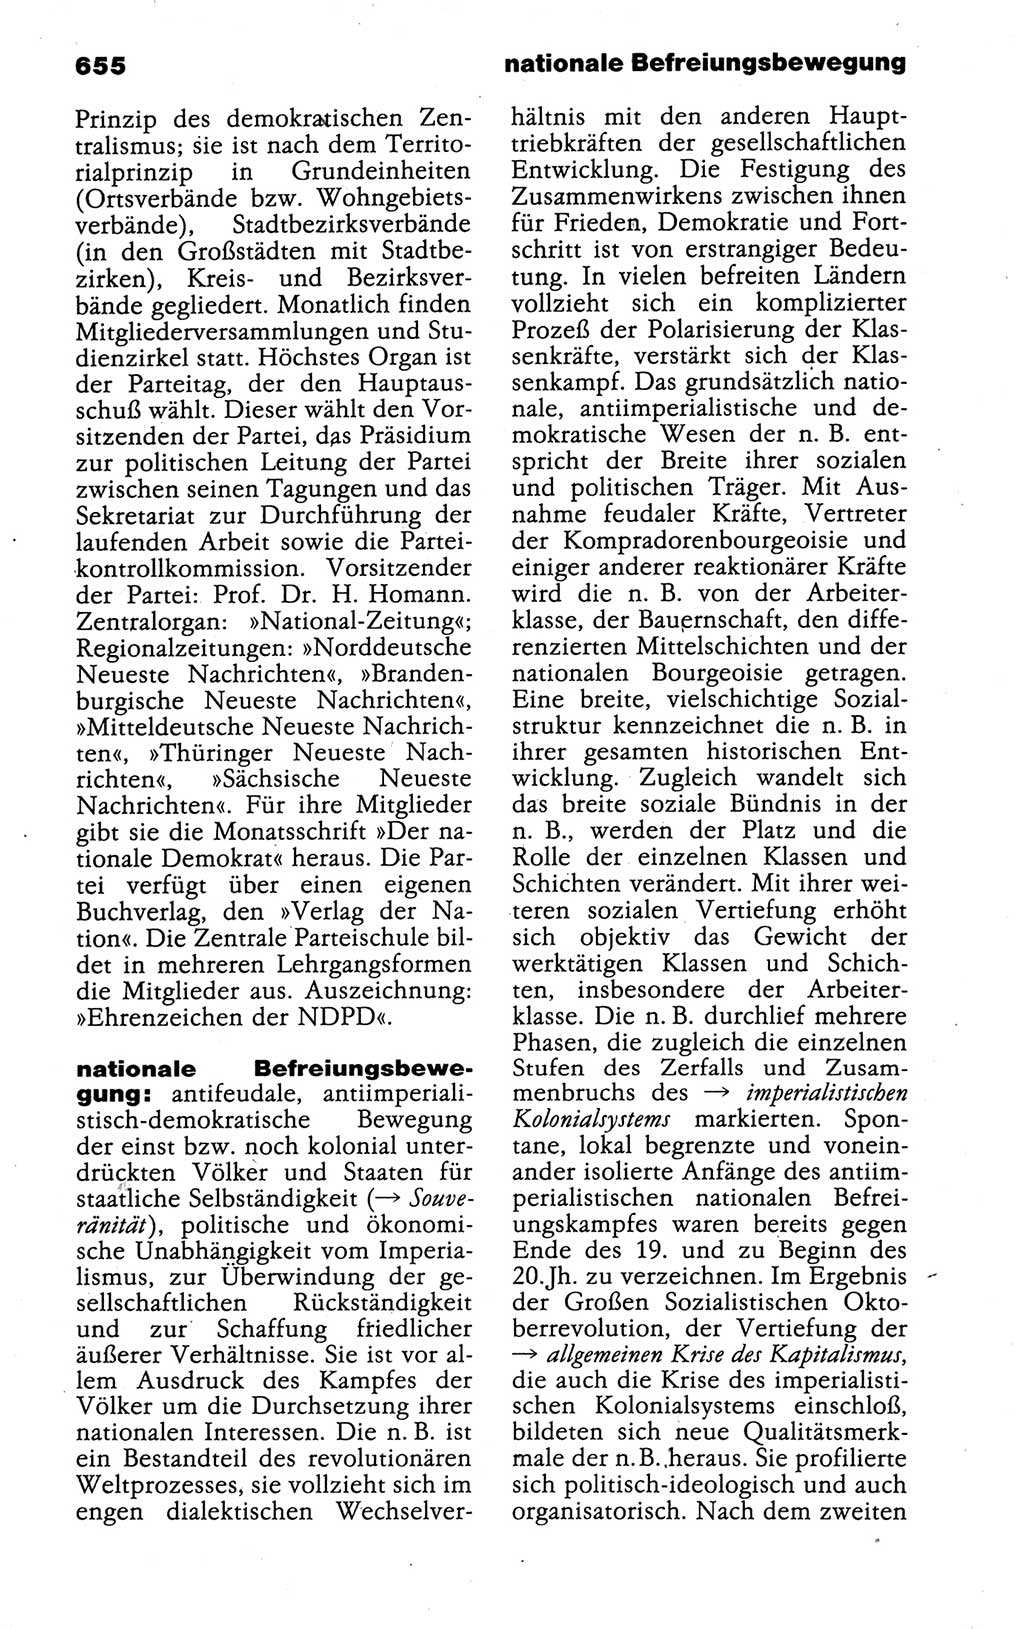 Kleines politisches Wörterbuch [Deutsche Demokratische Republik (DDR)] 1988, Seite 655 (Kl. pol. Wb. DDR 1988, S. 655)